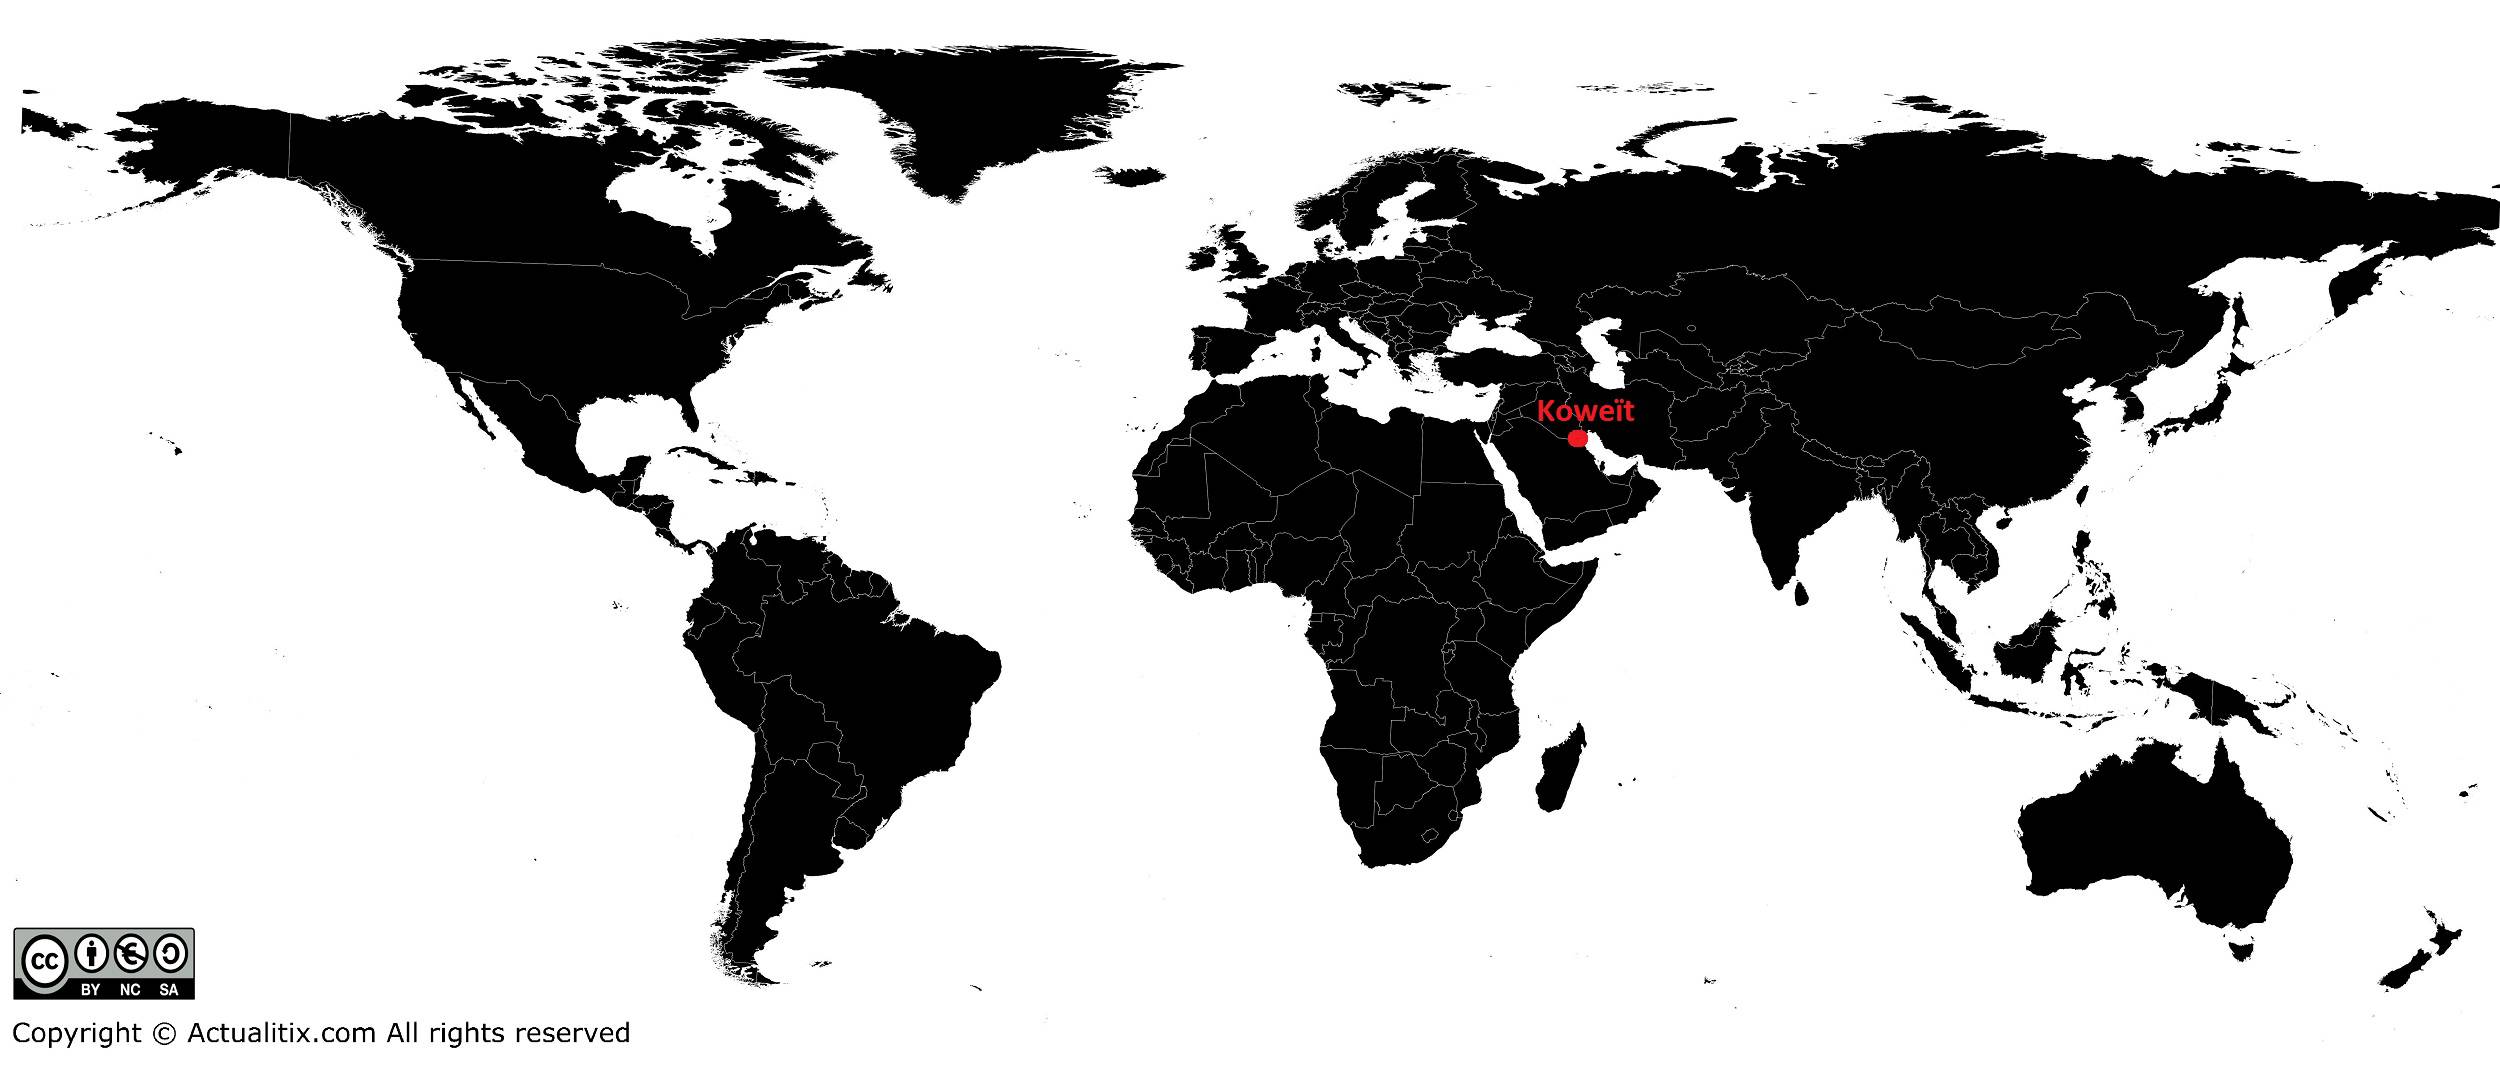 Koweït sur carte du monde